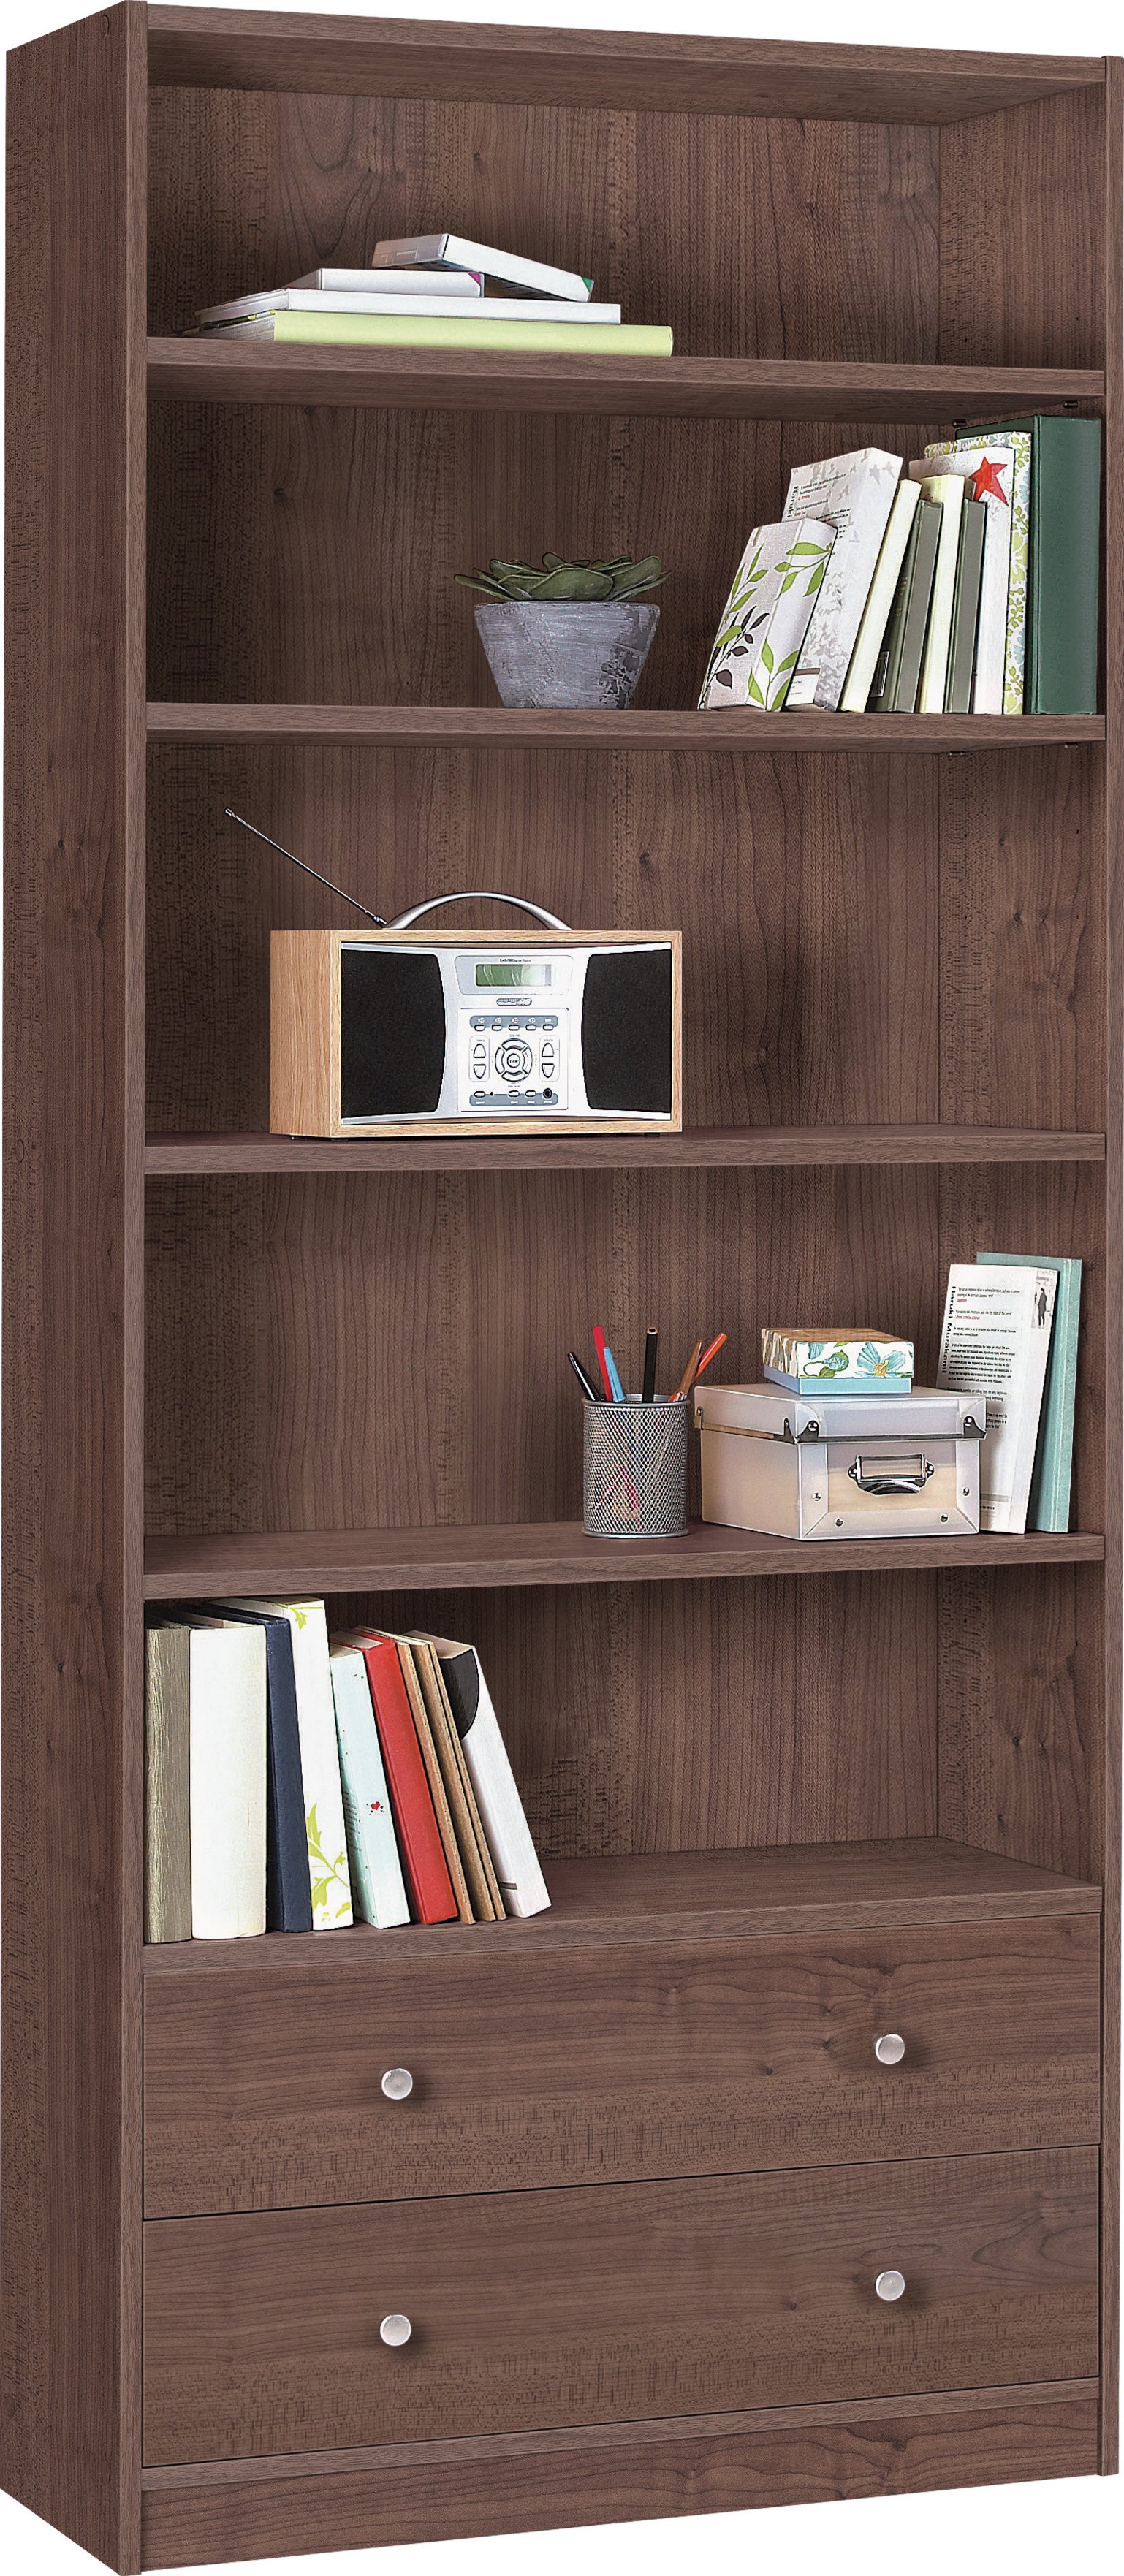 Argos Home Maine 5 Shelf 2 Drw Bookcase review